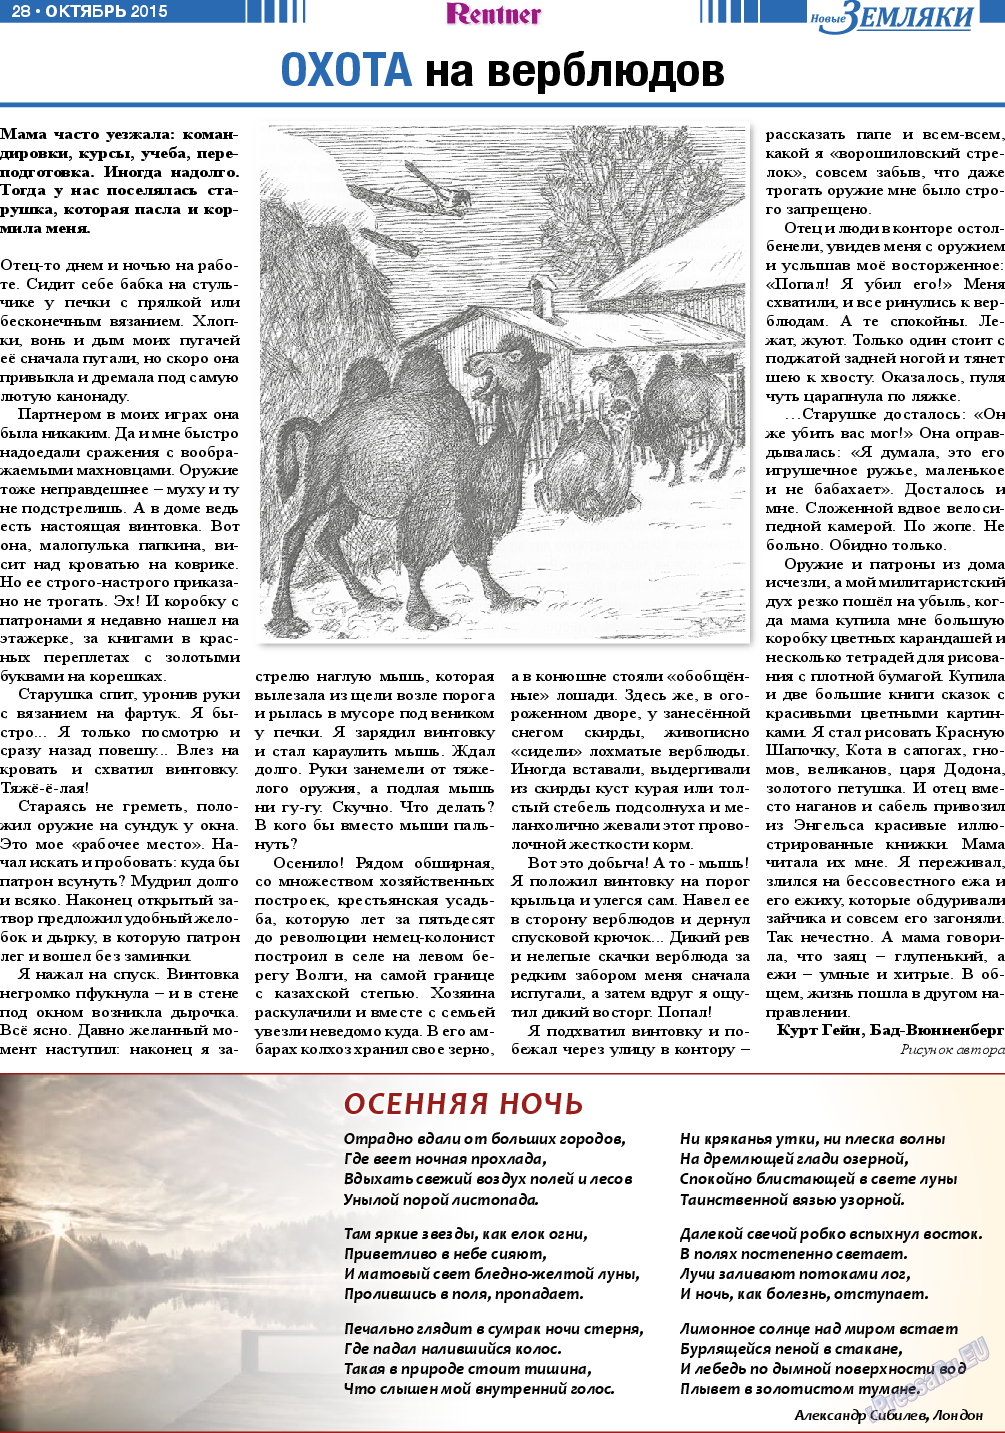 Новые Земляки, газета. 2015 №10 стр.28